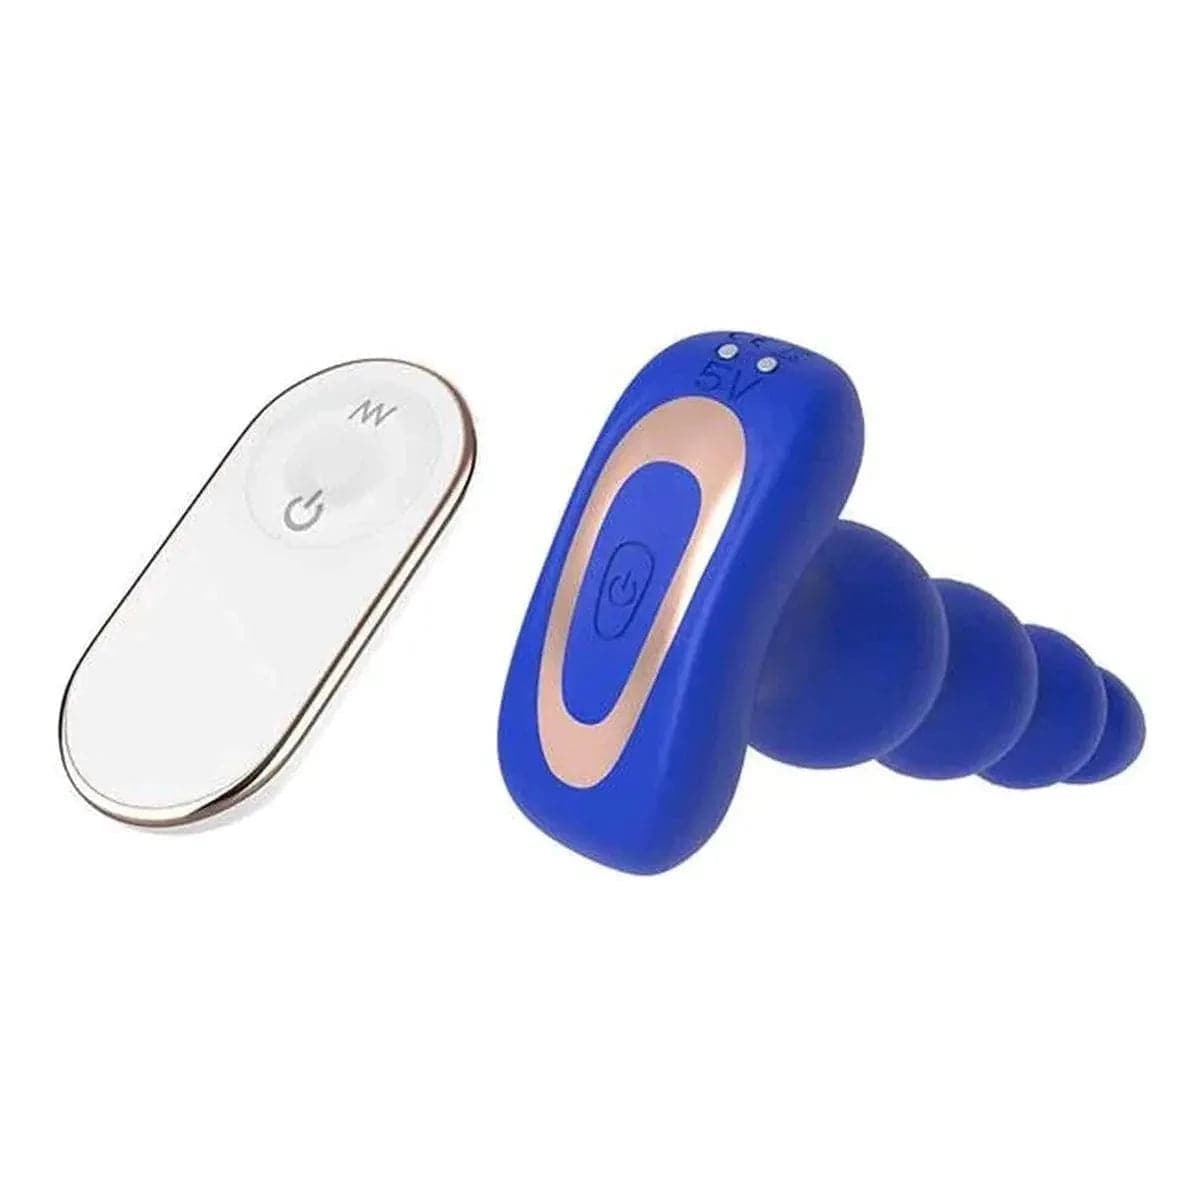 Cordão Anal Cheeky Love Azul USB com Controlo Remoto, 18cm Ø3.5cm, 9 Vibrações  Dream Toys   